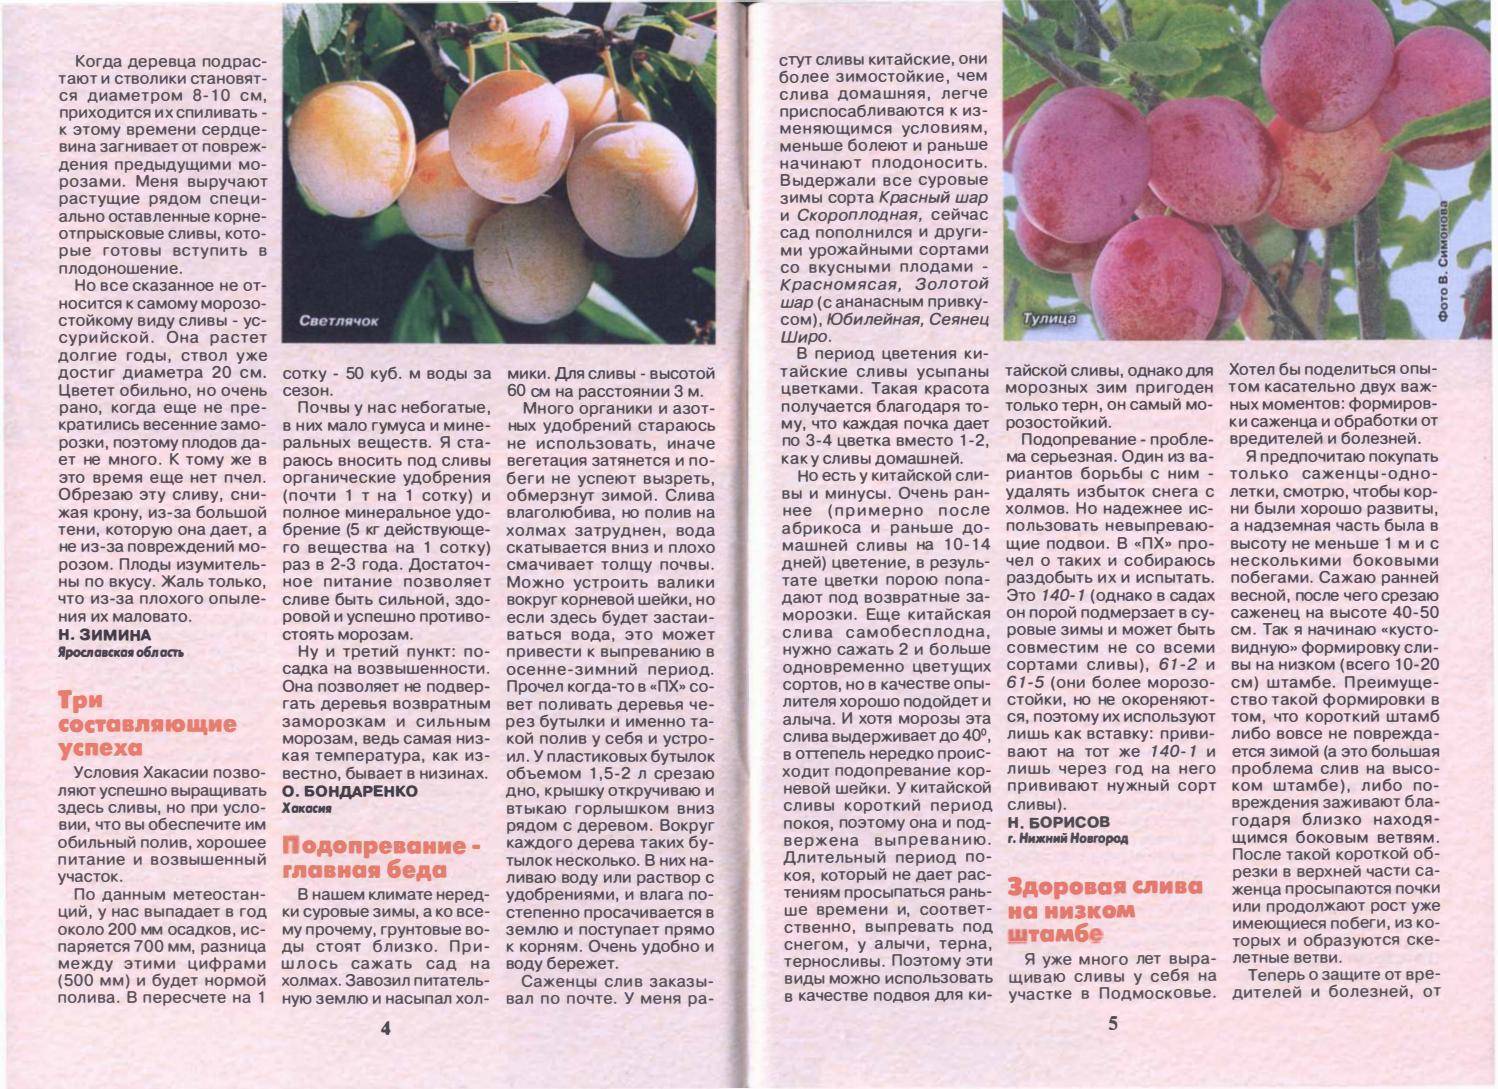 15 лучших сортов персика